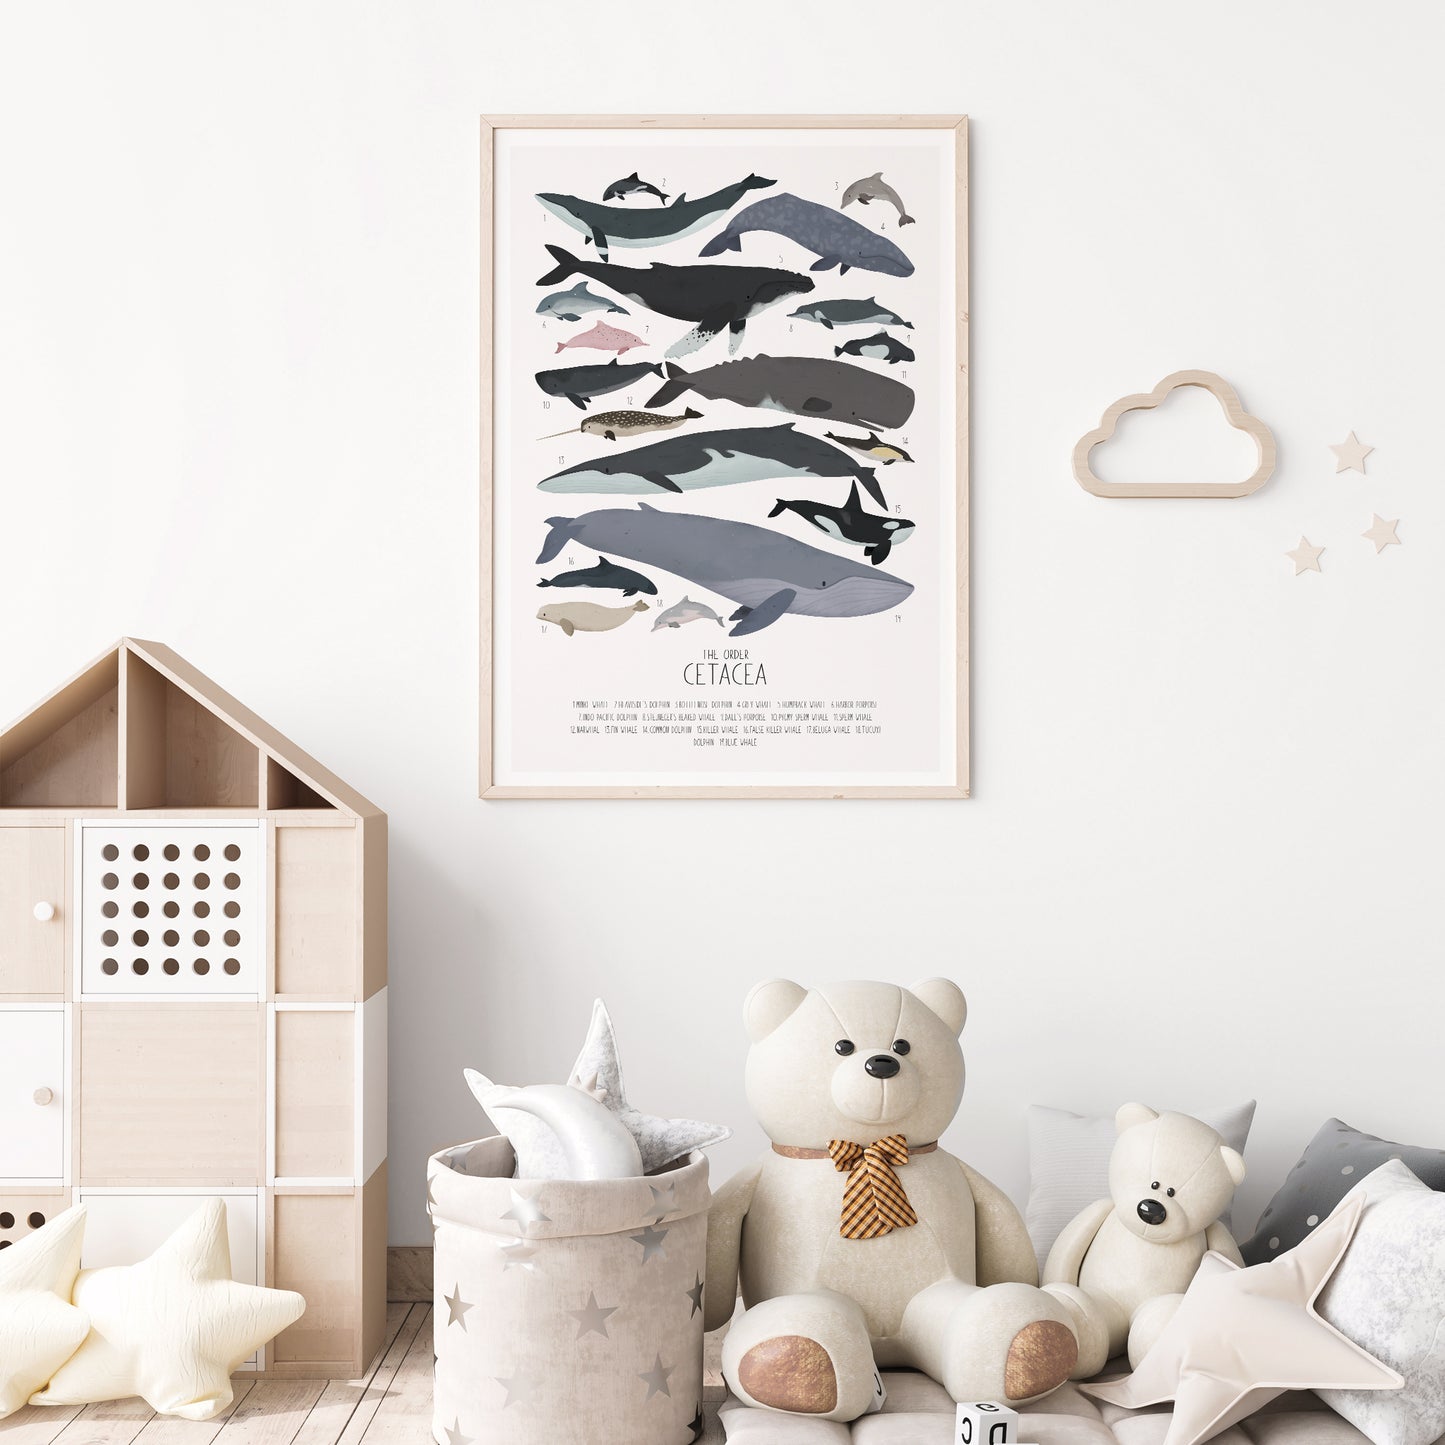 Order Cetacea - Nursery print